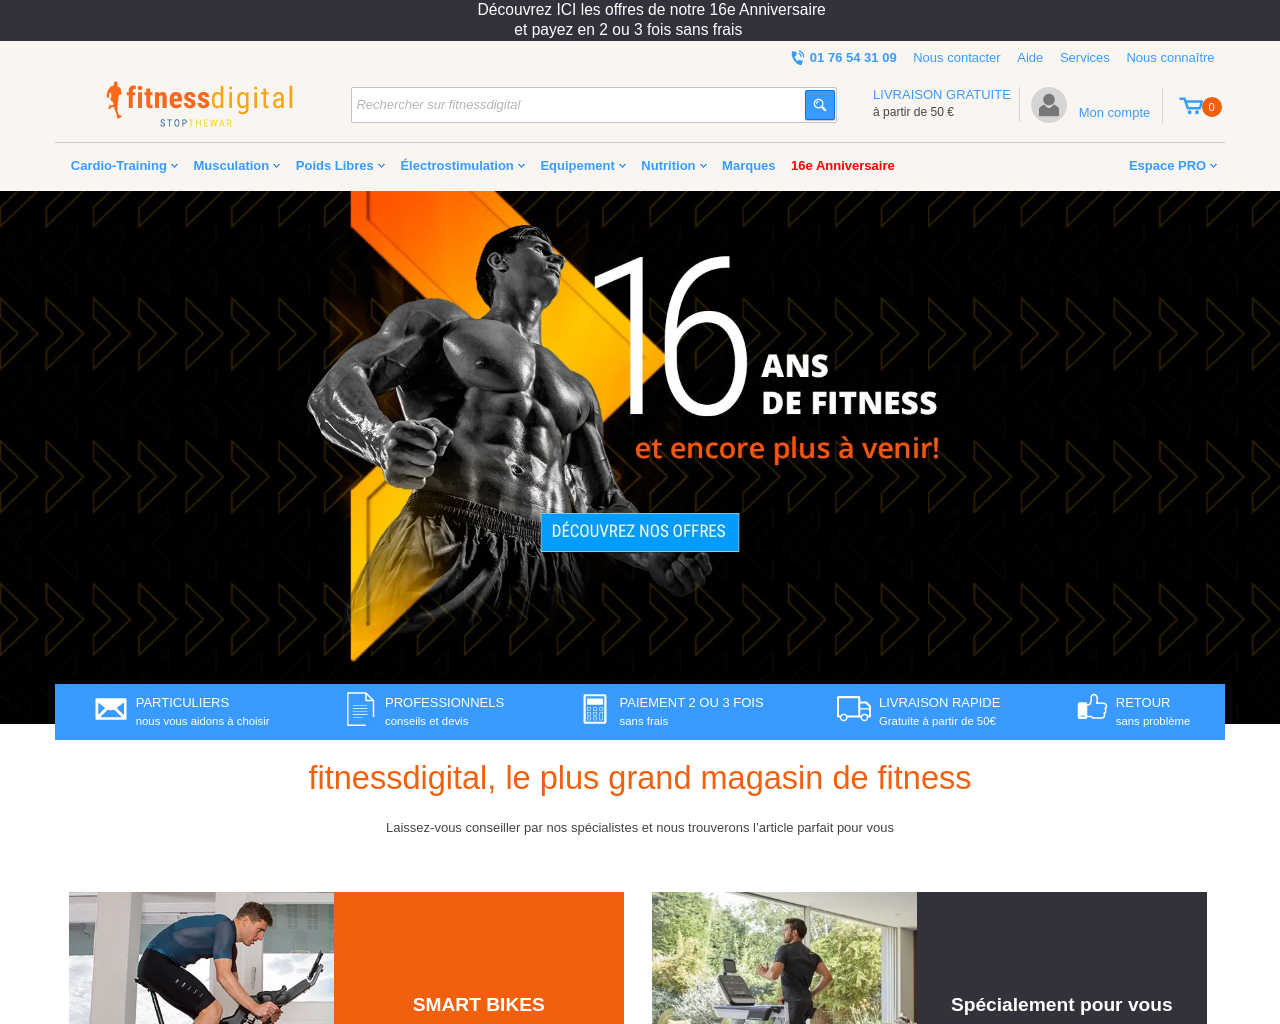 www.fitnessdigital.fr